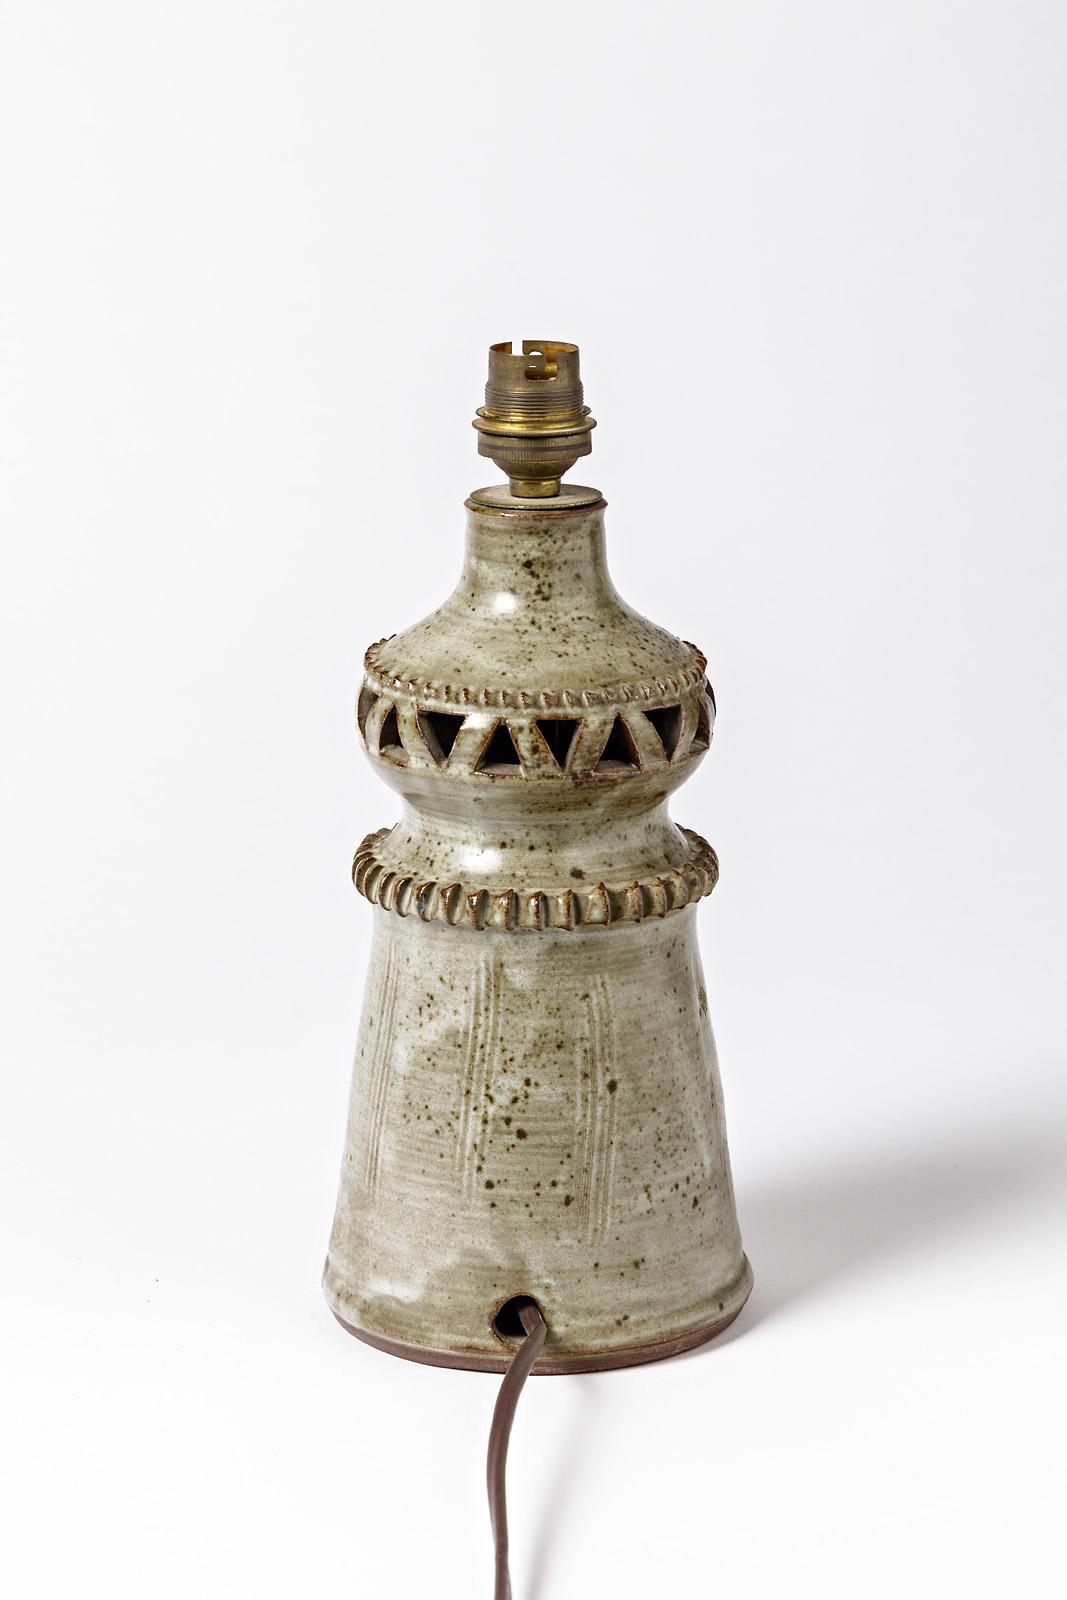 French Small Ceramic Lamp by the Potters of La Borne, circa 1970